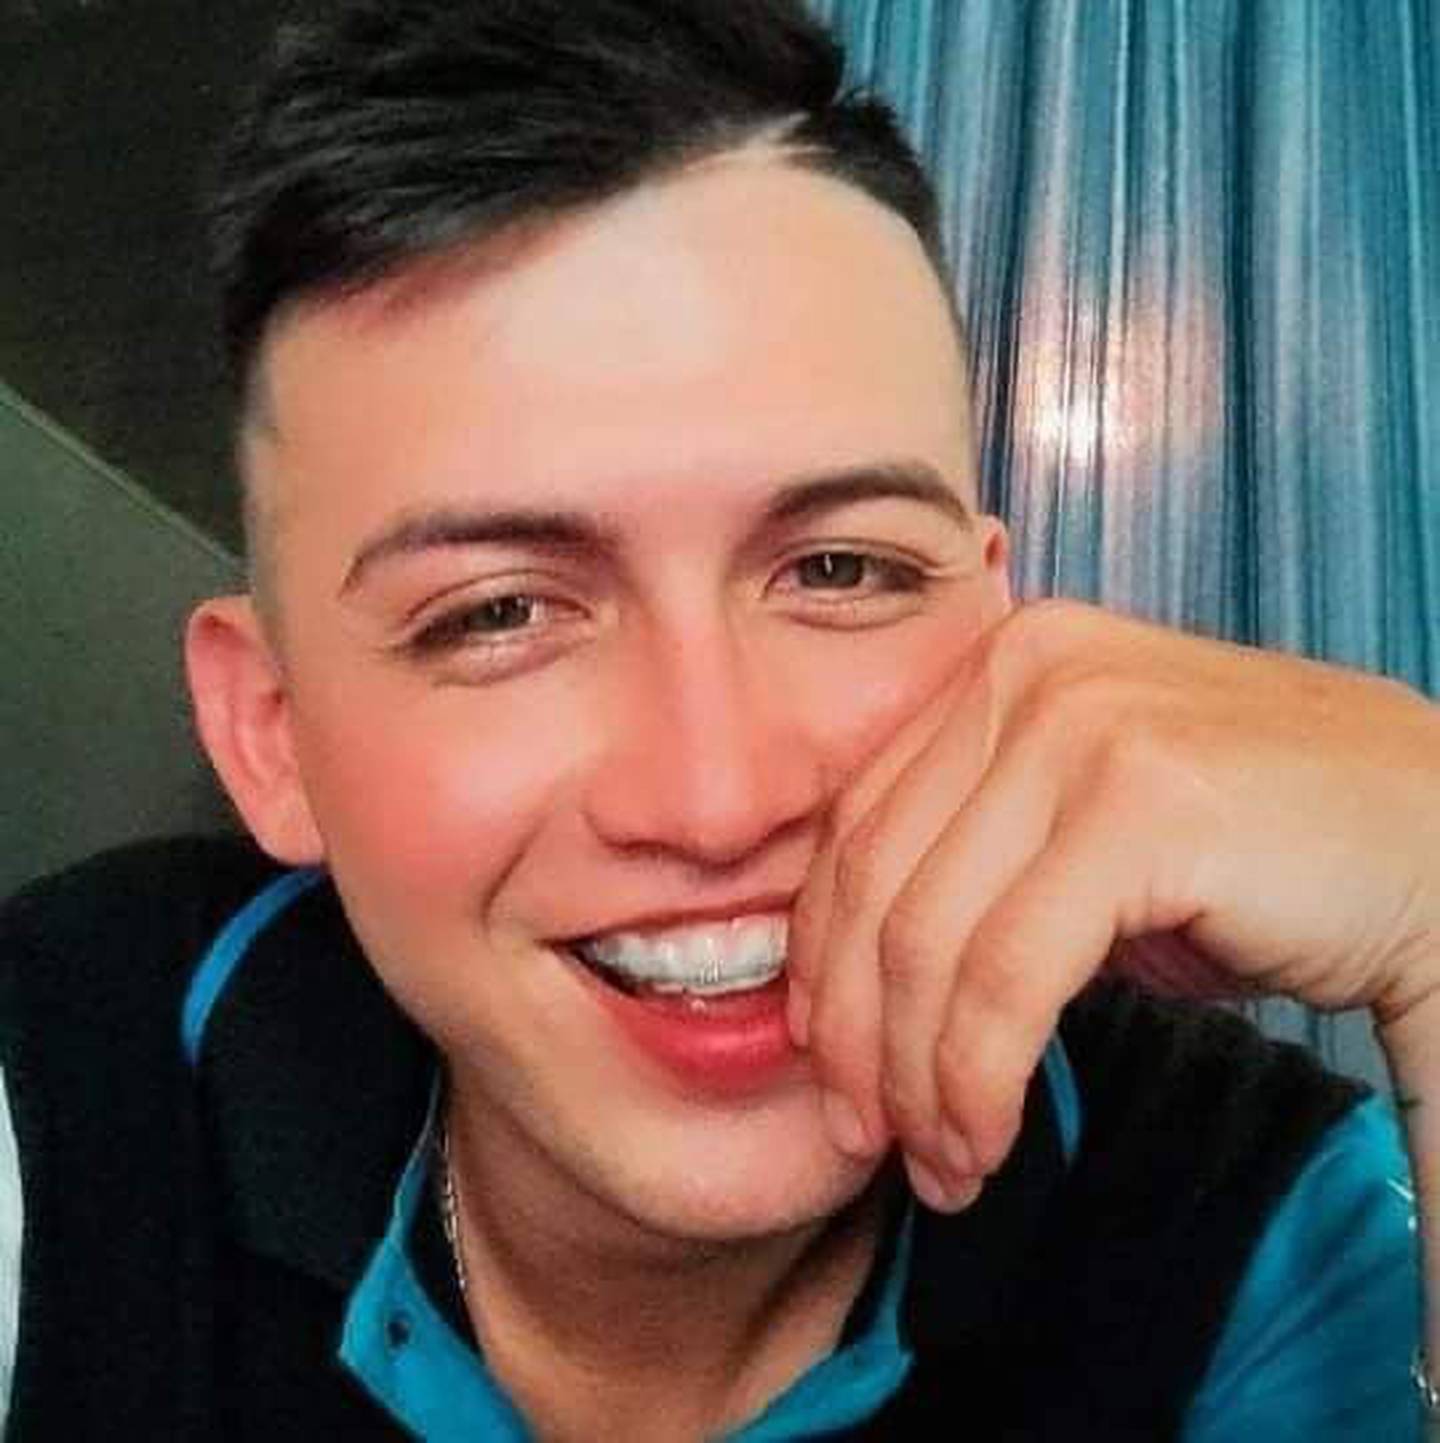 Carlos Francisco Pérez, de 28 años, falleció tras una agresión por parte de un rival en Heredia. El atacante fue condenado a 22 años de prisión. Foto: Cortesía de la familia.